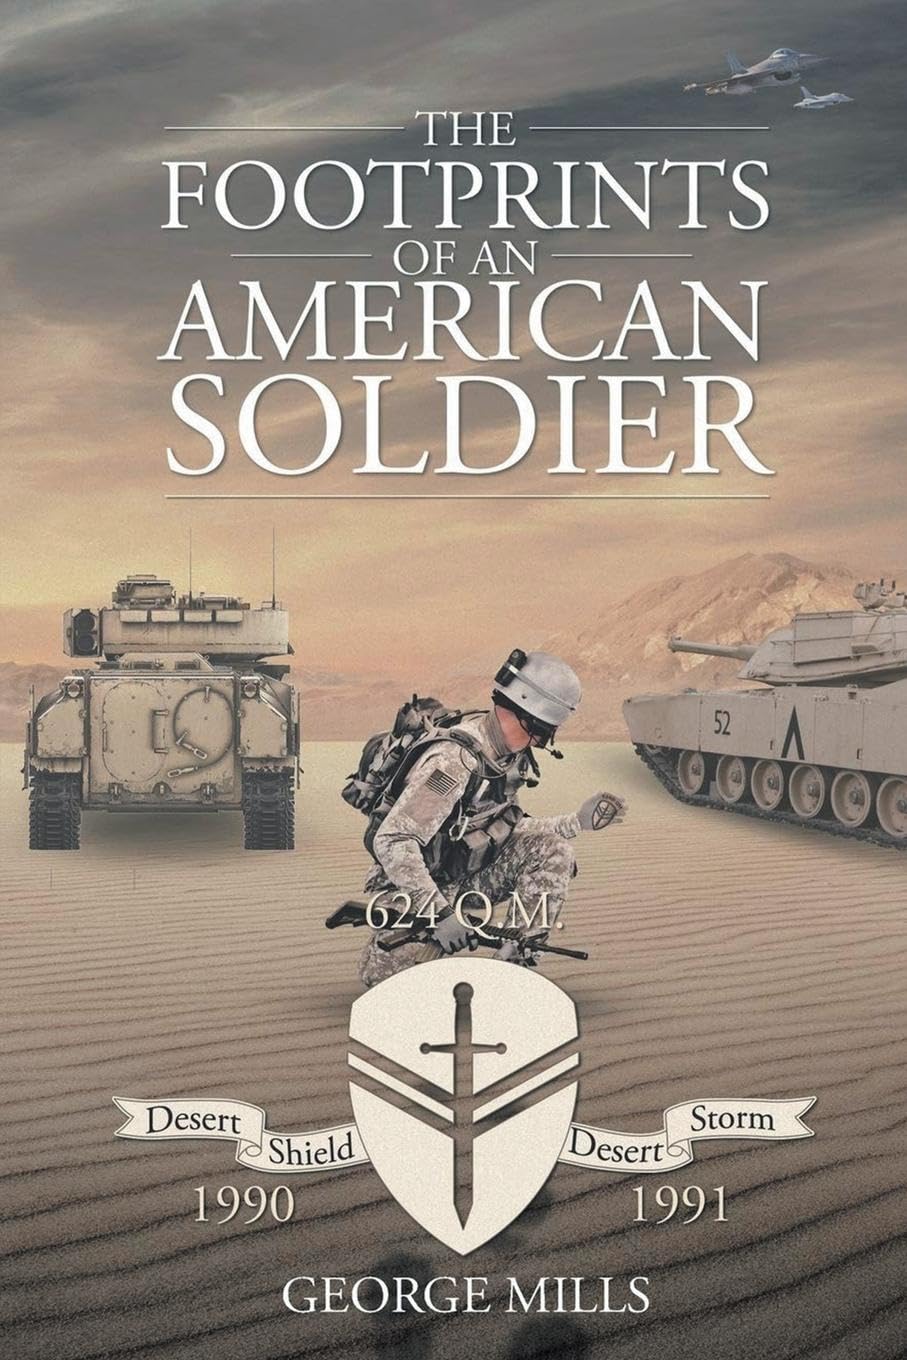 Veteran George Mills Releases Poignant Memoir "The Footprints of an American Soldier"